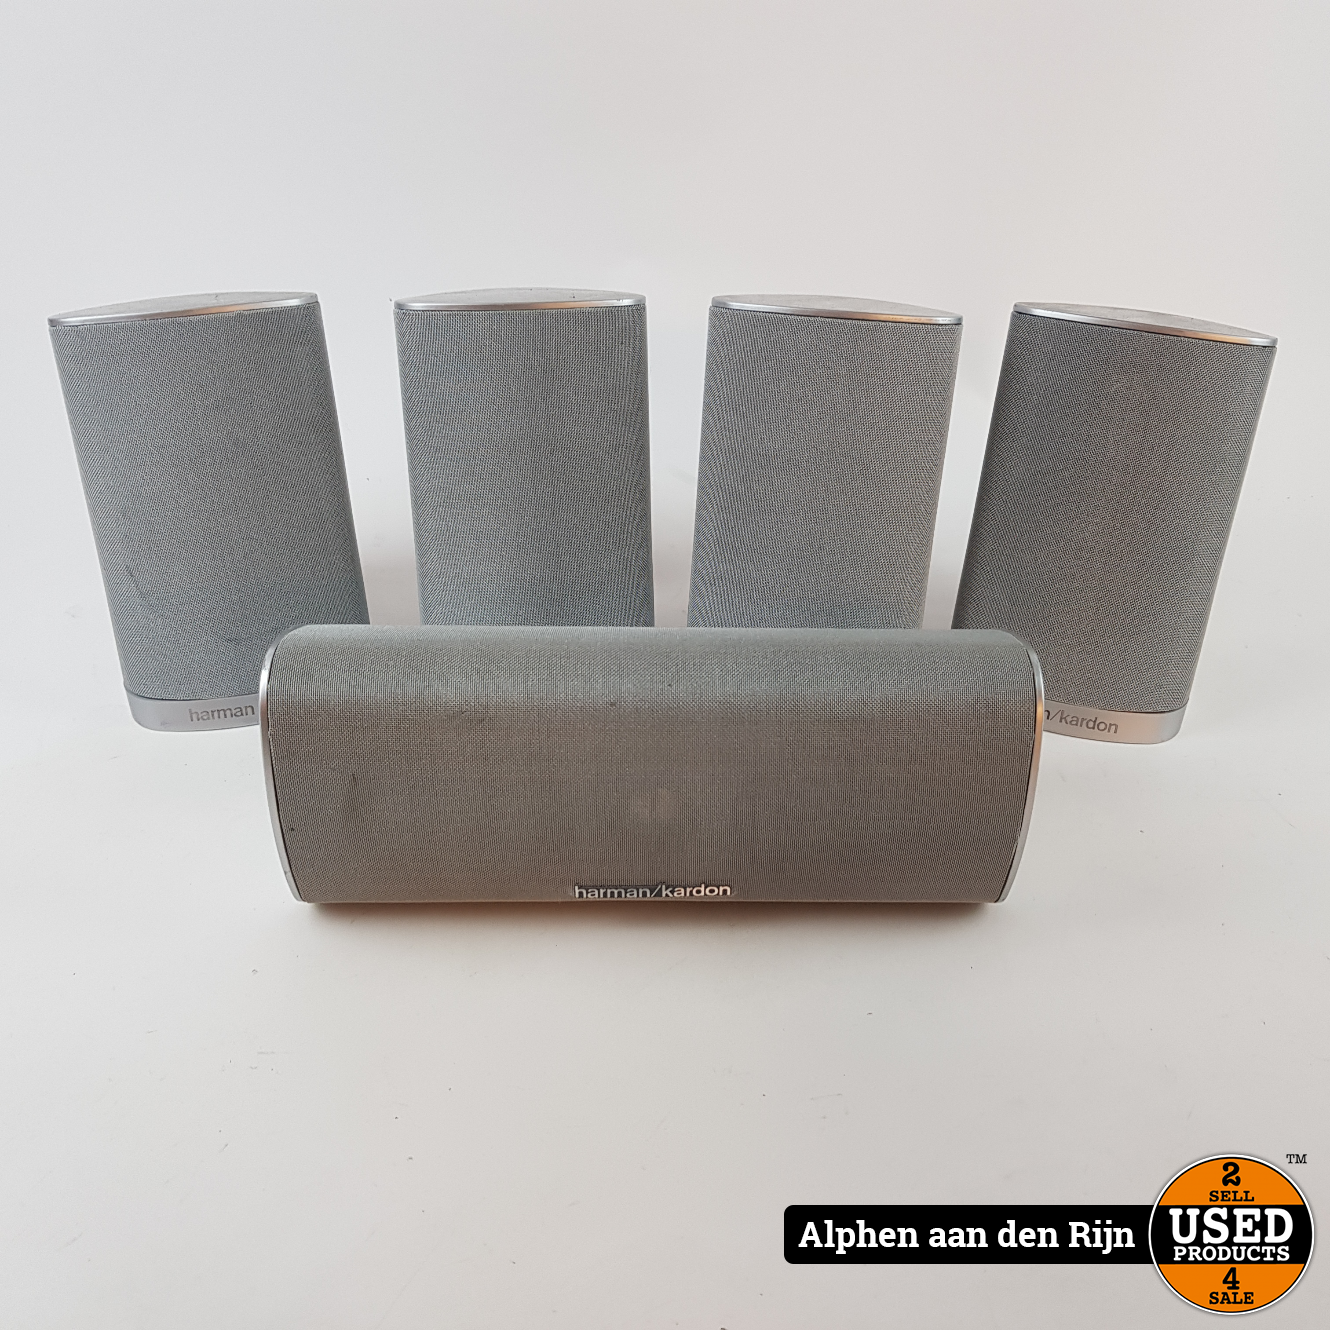 Alsjeblieft kijk Zilver hardware Harman kardon HKTS speaker set - Used Products Alphen aan den Rijn